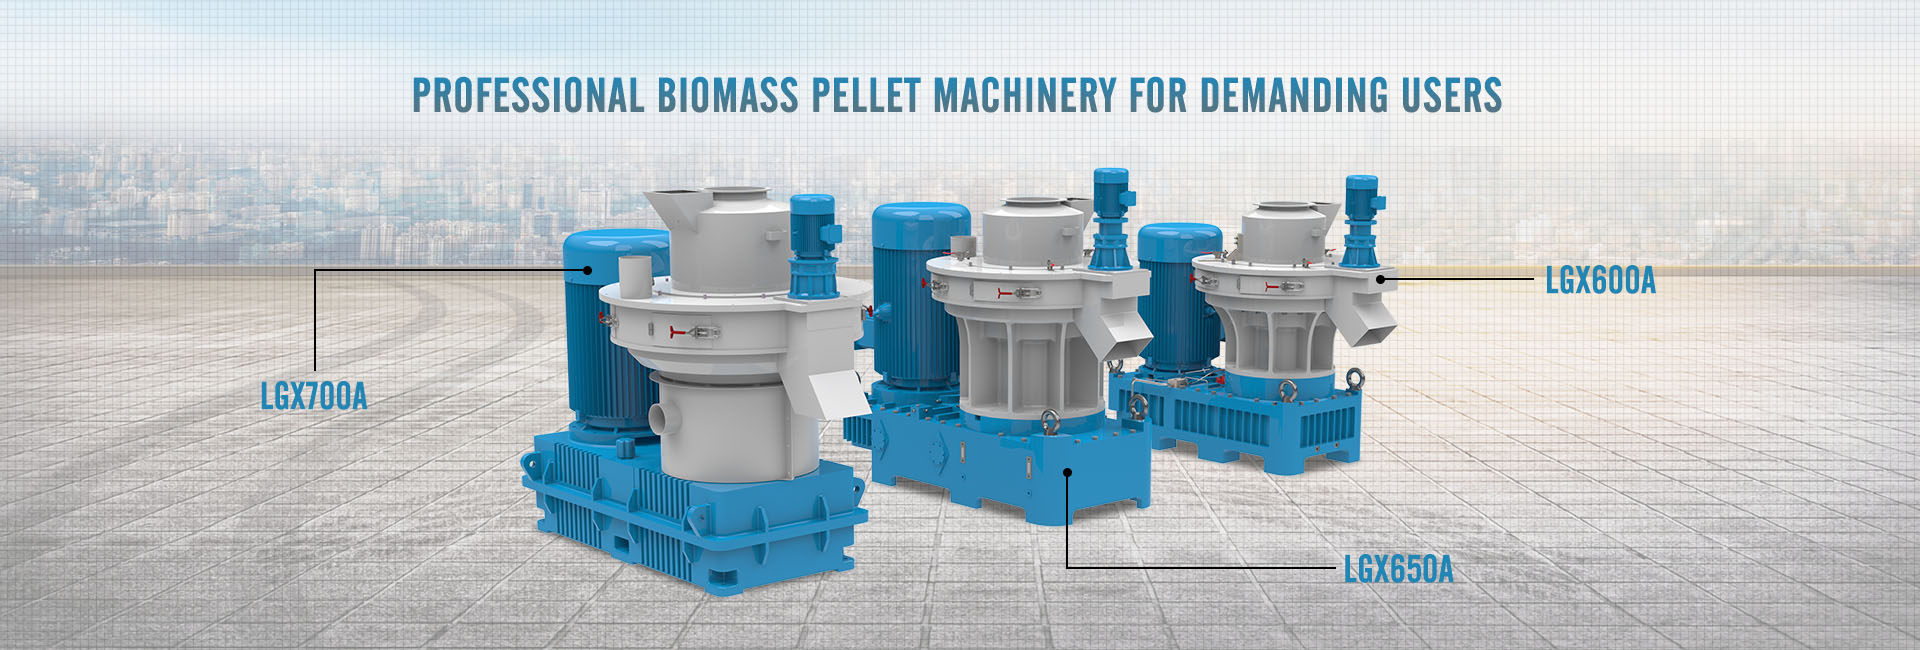 Profesionalni strojevi peleta biomase za zahtjevne korisnike